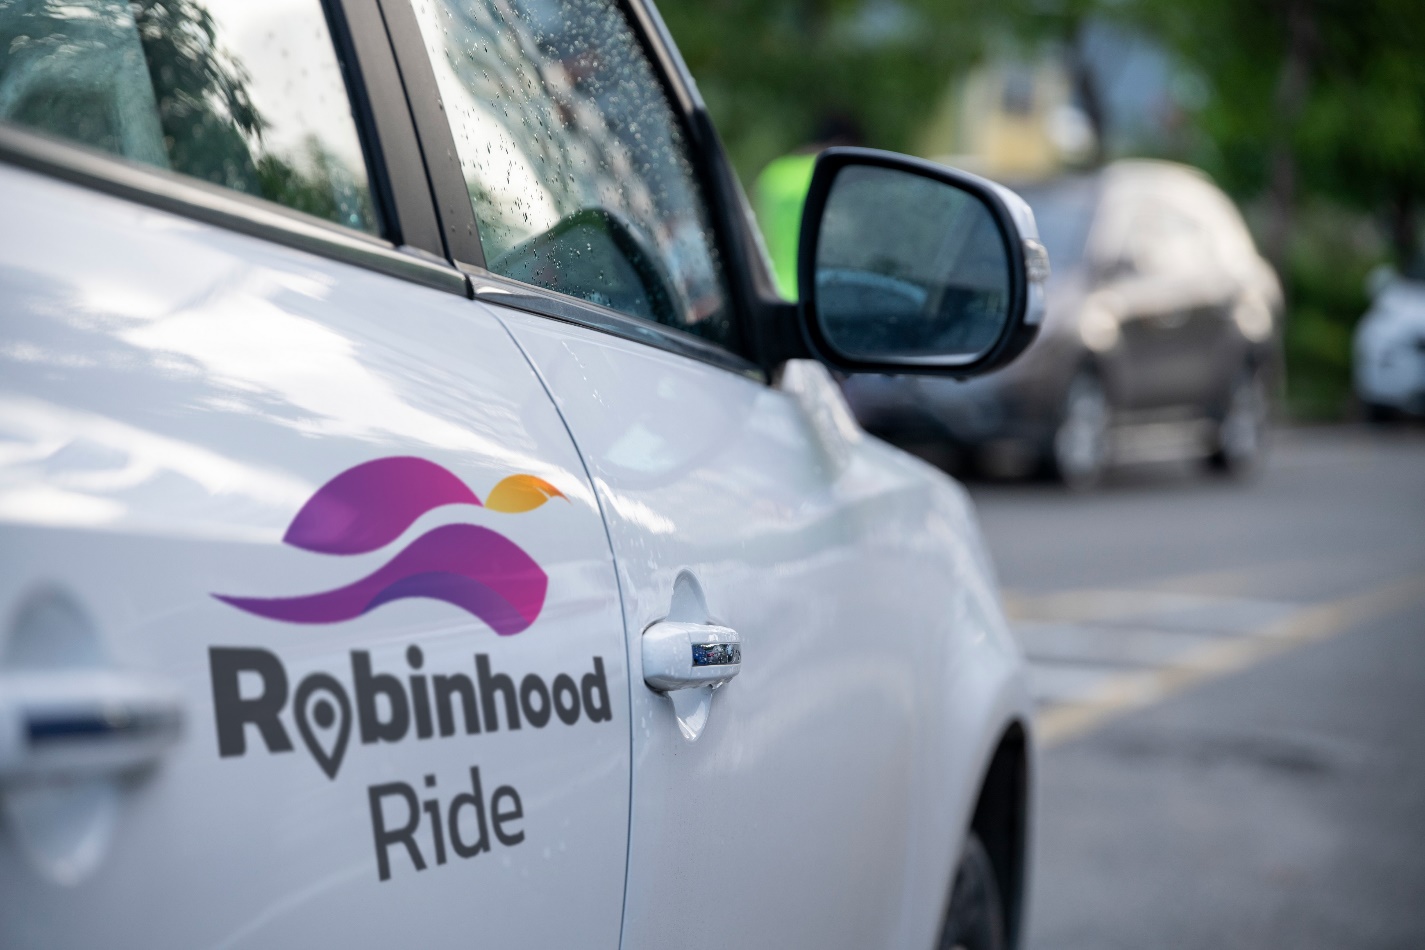 “Robinhood” เตรียมลุยธุรกิจ “แพลตฟอร์มเรียกรถ” เต็มสูบ หลังได้รับการรับรองจากกรมขนส่งฯ เป็นที่เรียบร้อย คาดสามารถเปิดให้บริการ “Robinhood Ride” ปลายปี 2565